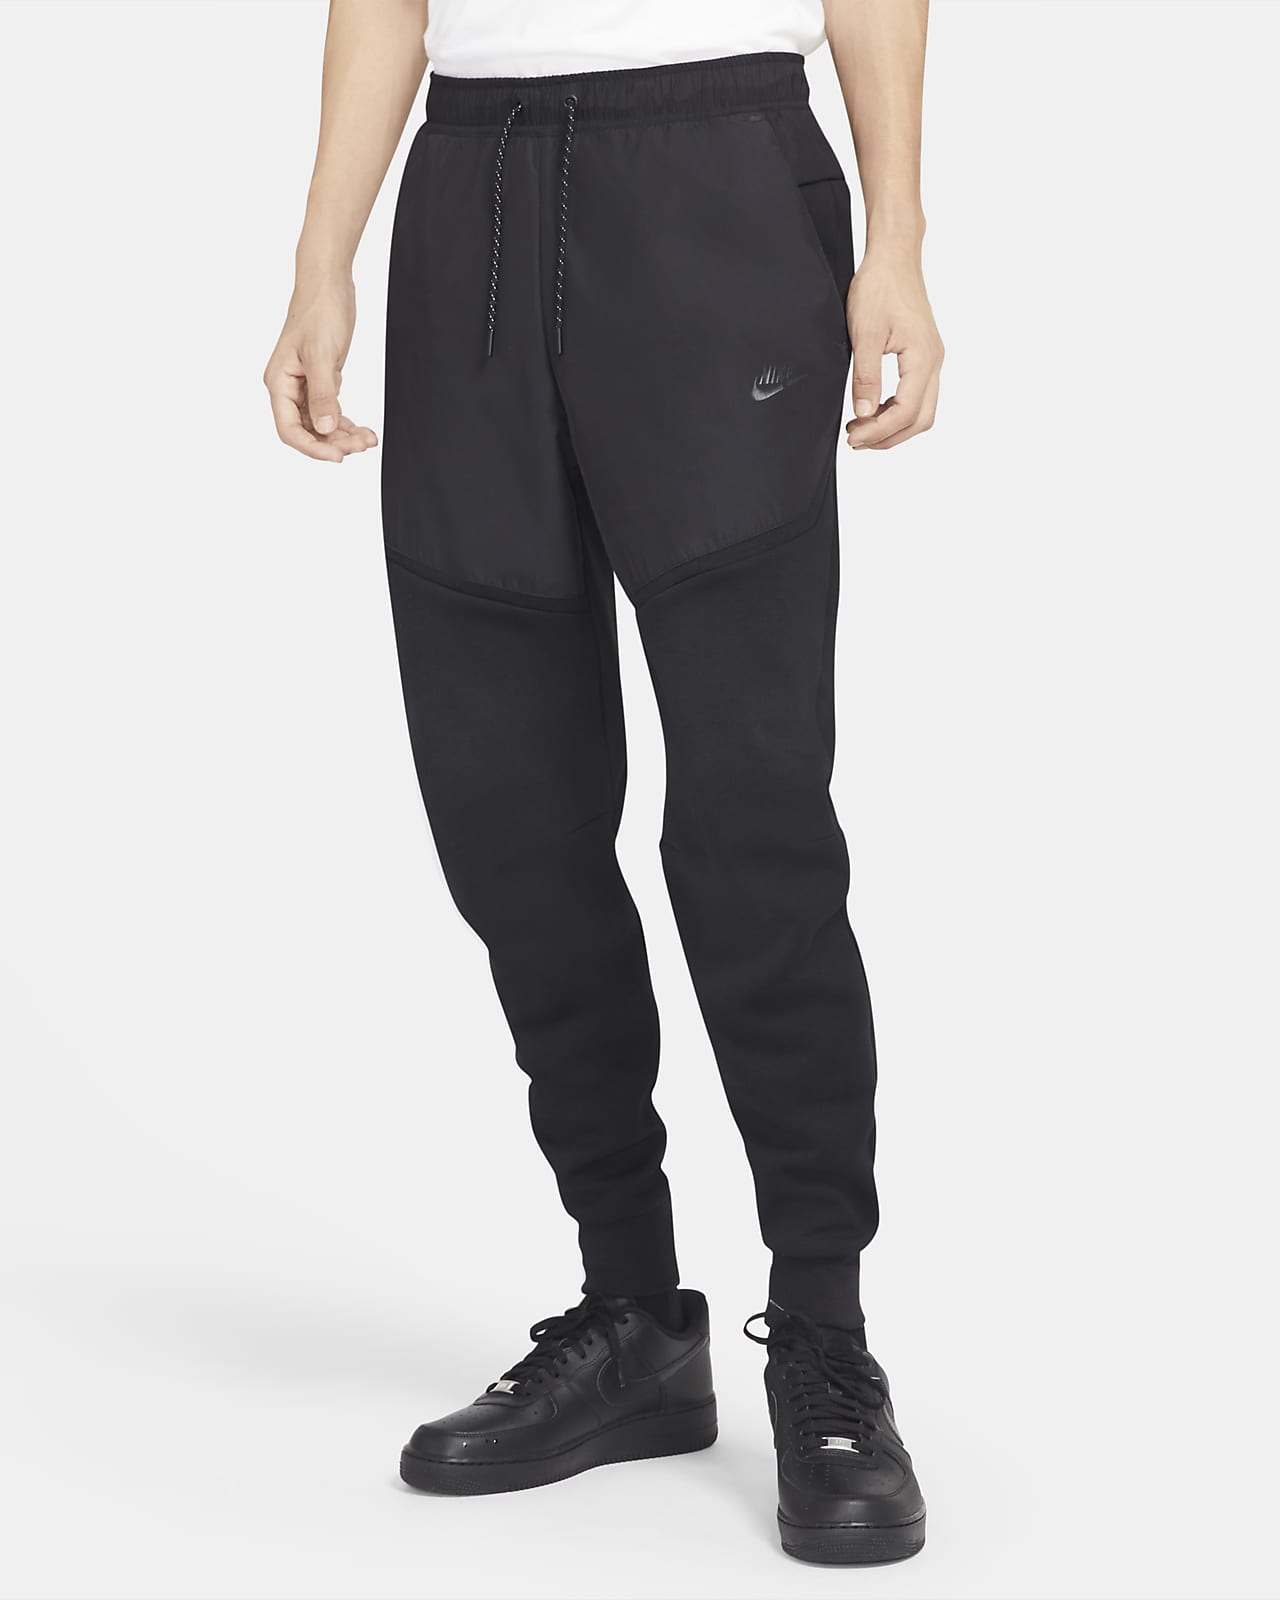 Pantalon Nike Tech Fleece Noir Top 47% - thecocktail-clinic.com